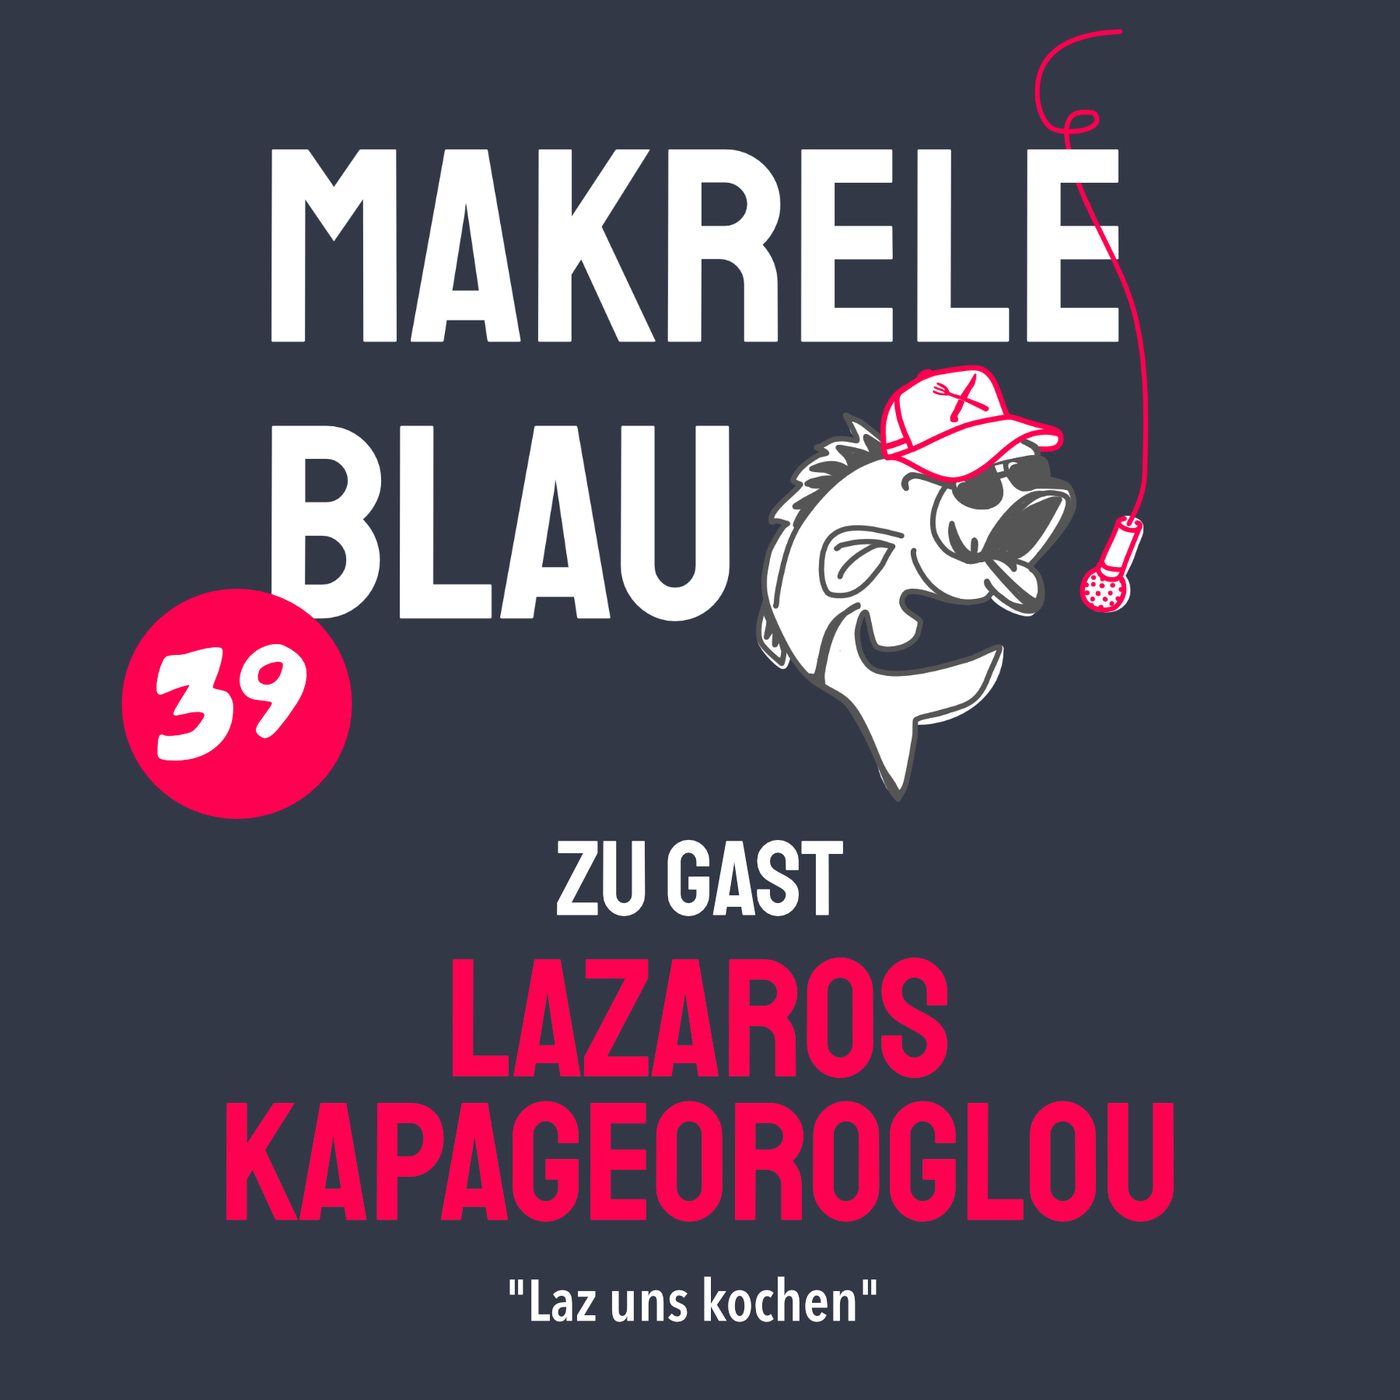 Makrele Blau #39 – Sunne uf äm Täller, mit em Lazaros Kapageoroglou